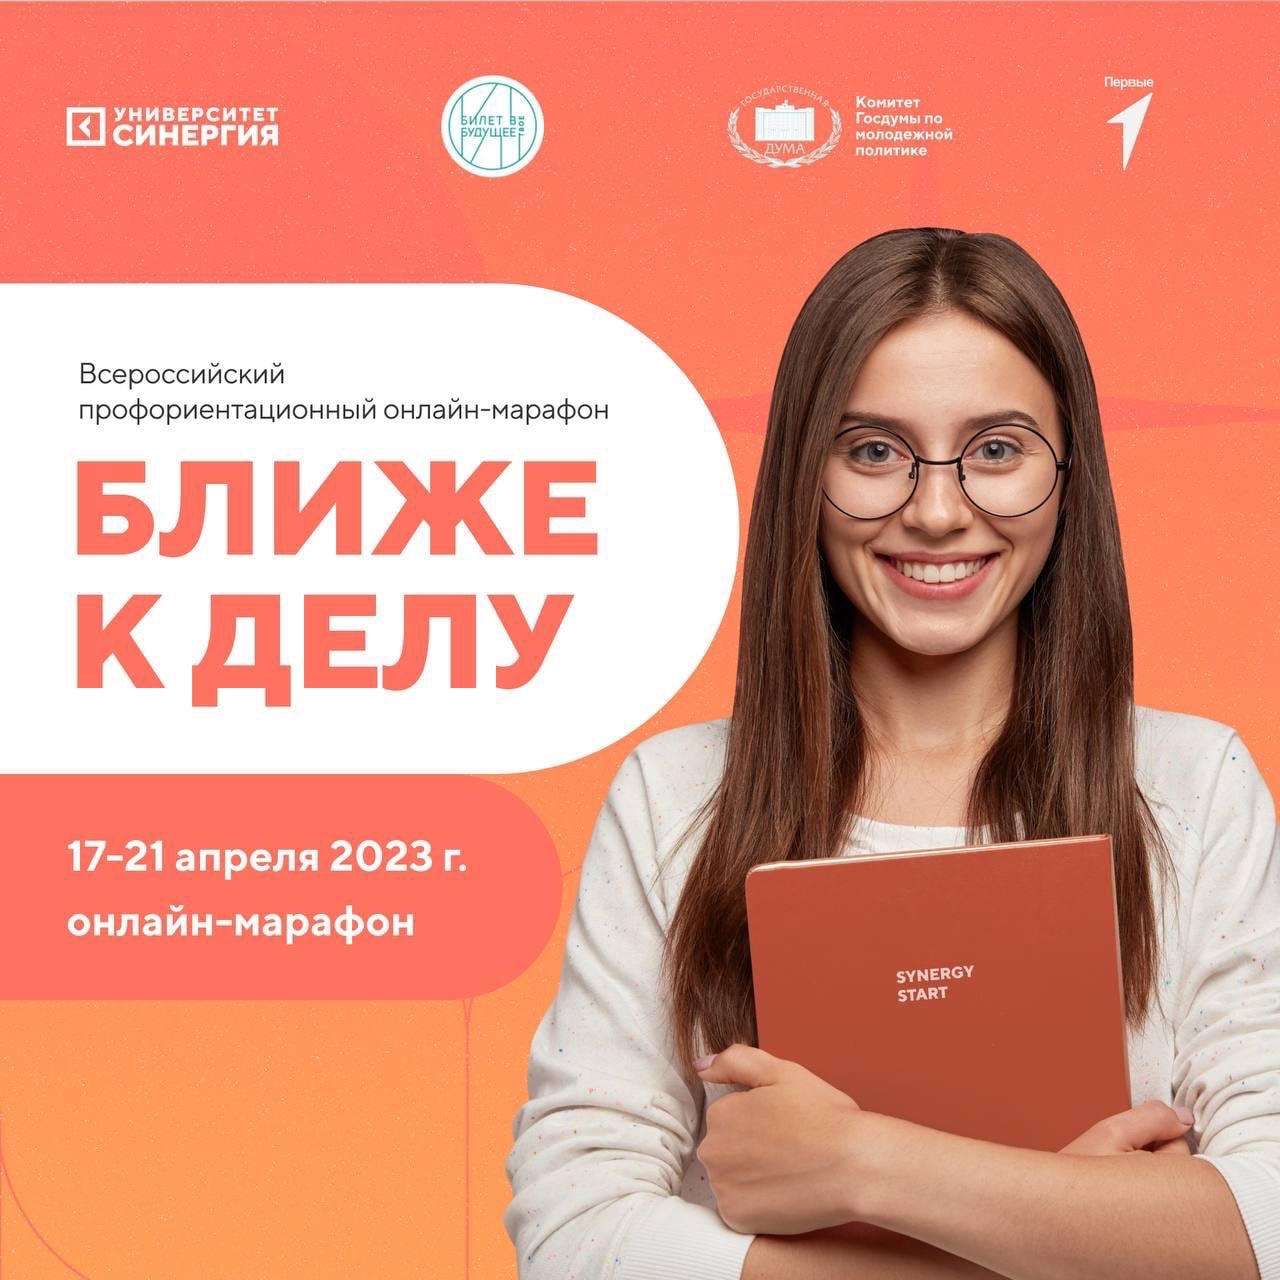 Всероссийский профориентационный онлайн-марафон «Ближе к делу».